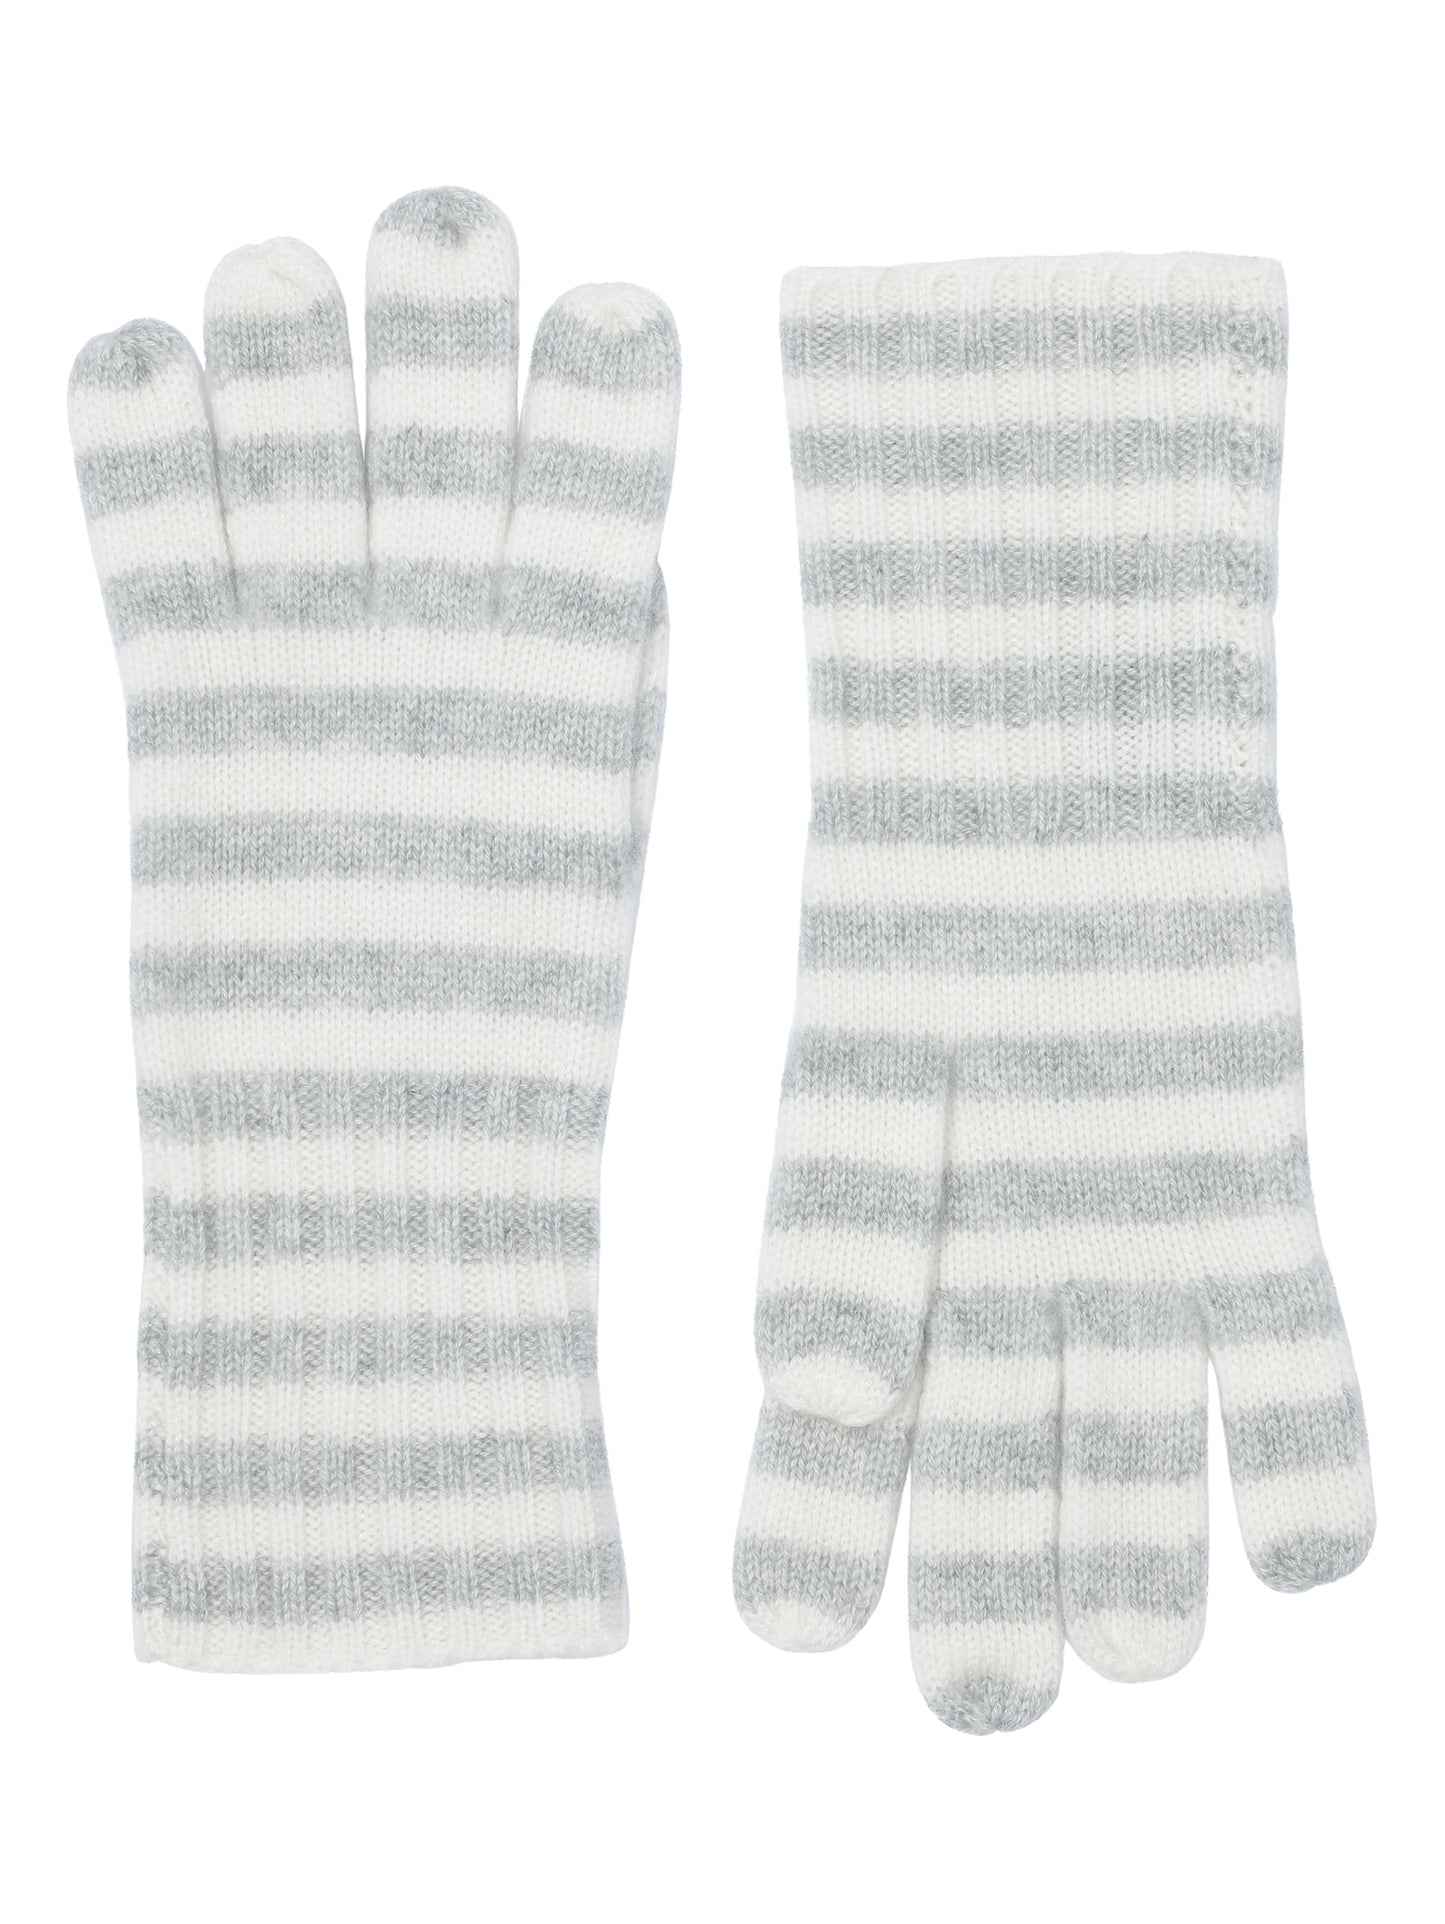 Robin - Handsker med striber i strikket cashmere - Lysegrå og Hvid